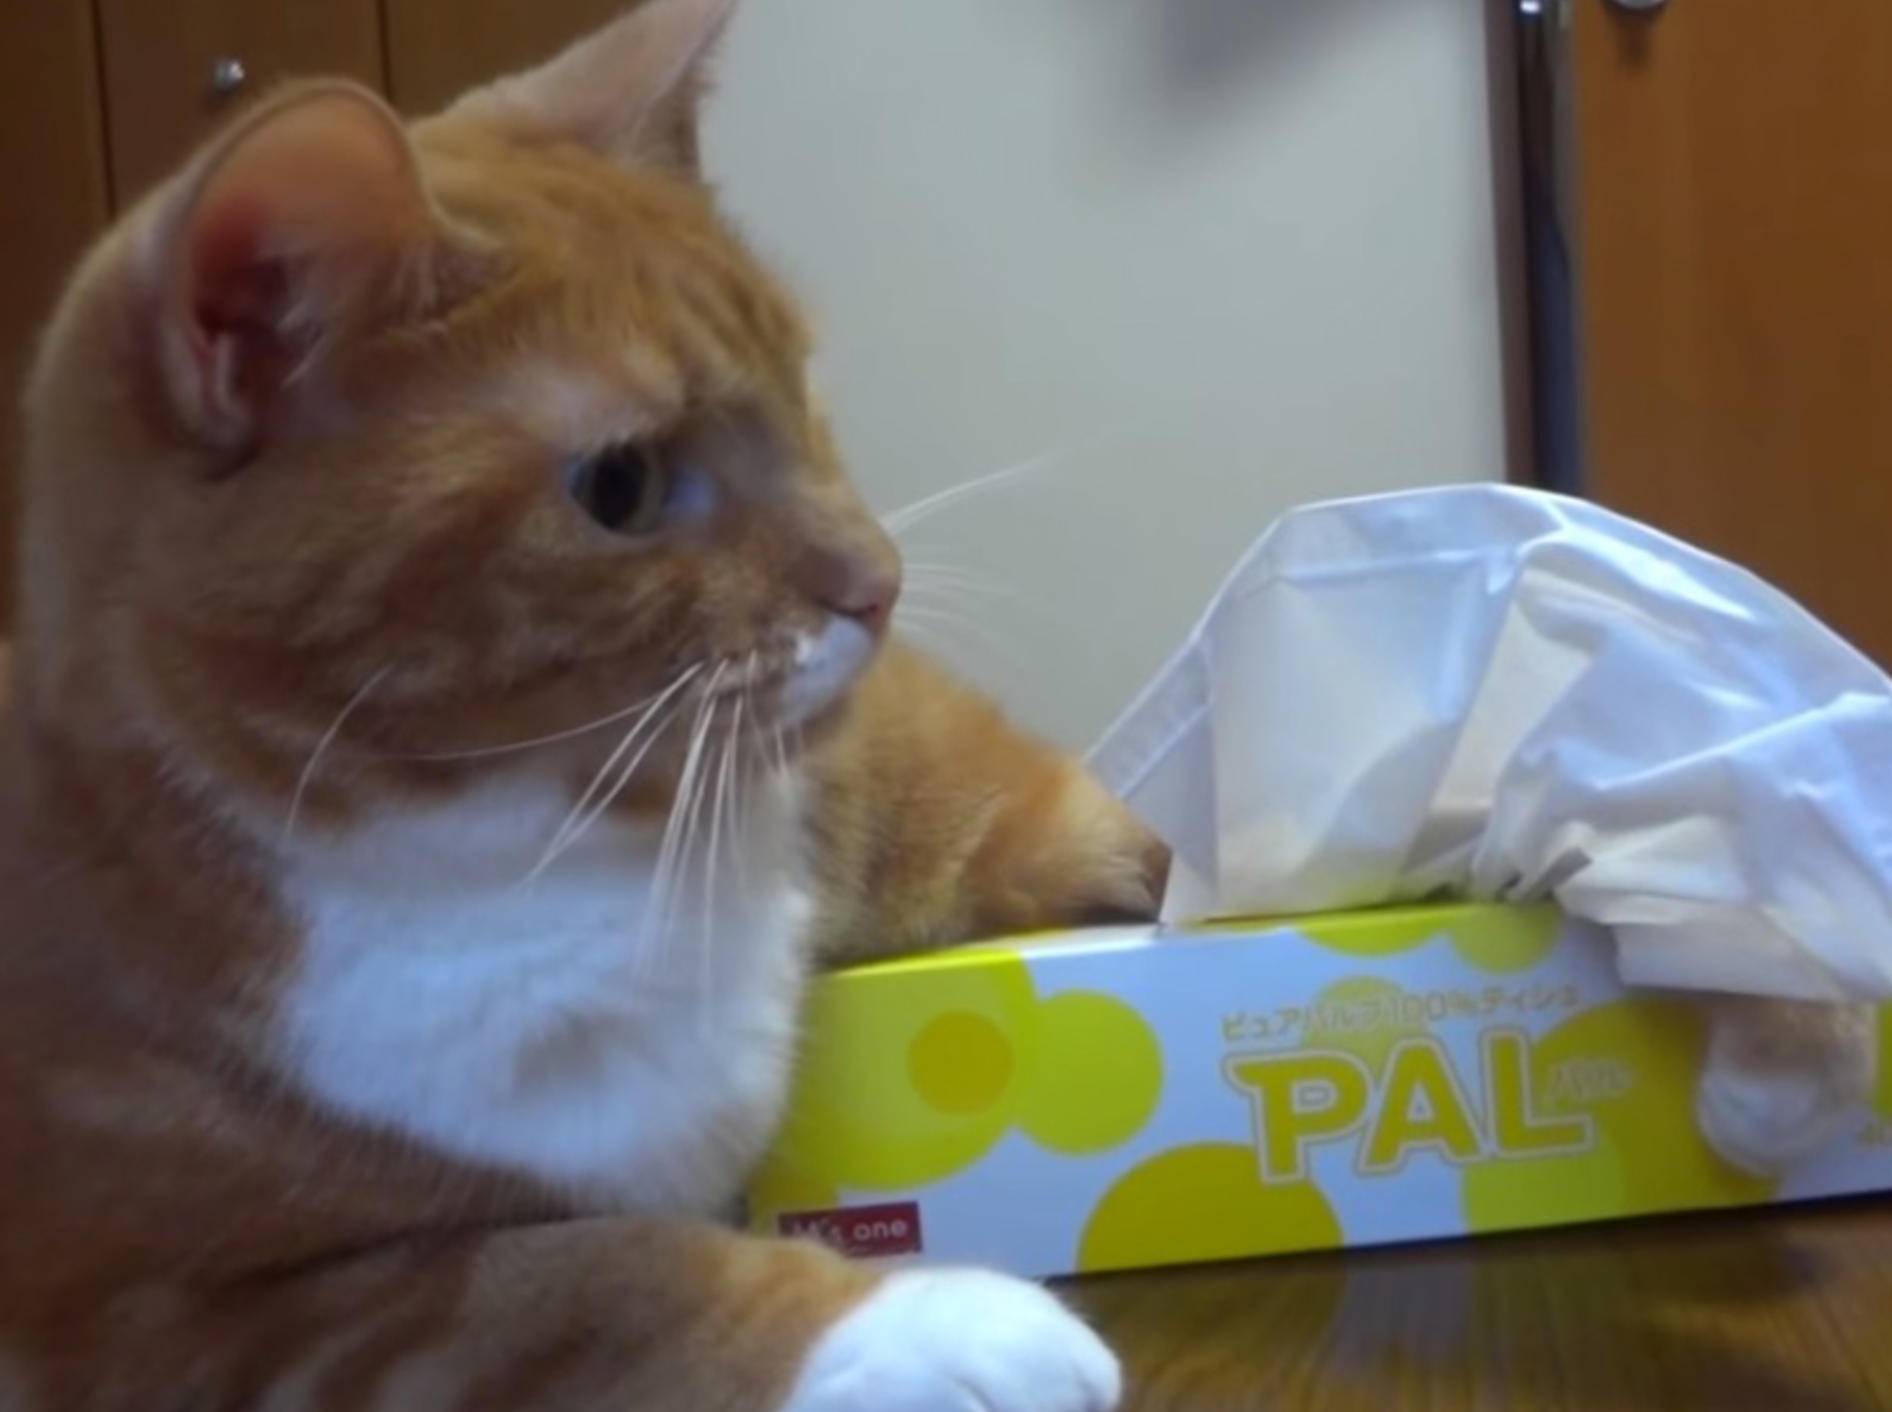 Freche Katze: "Hey, das sind meine Taschentücher!" – Bild: Youtube / FESTA0511